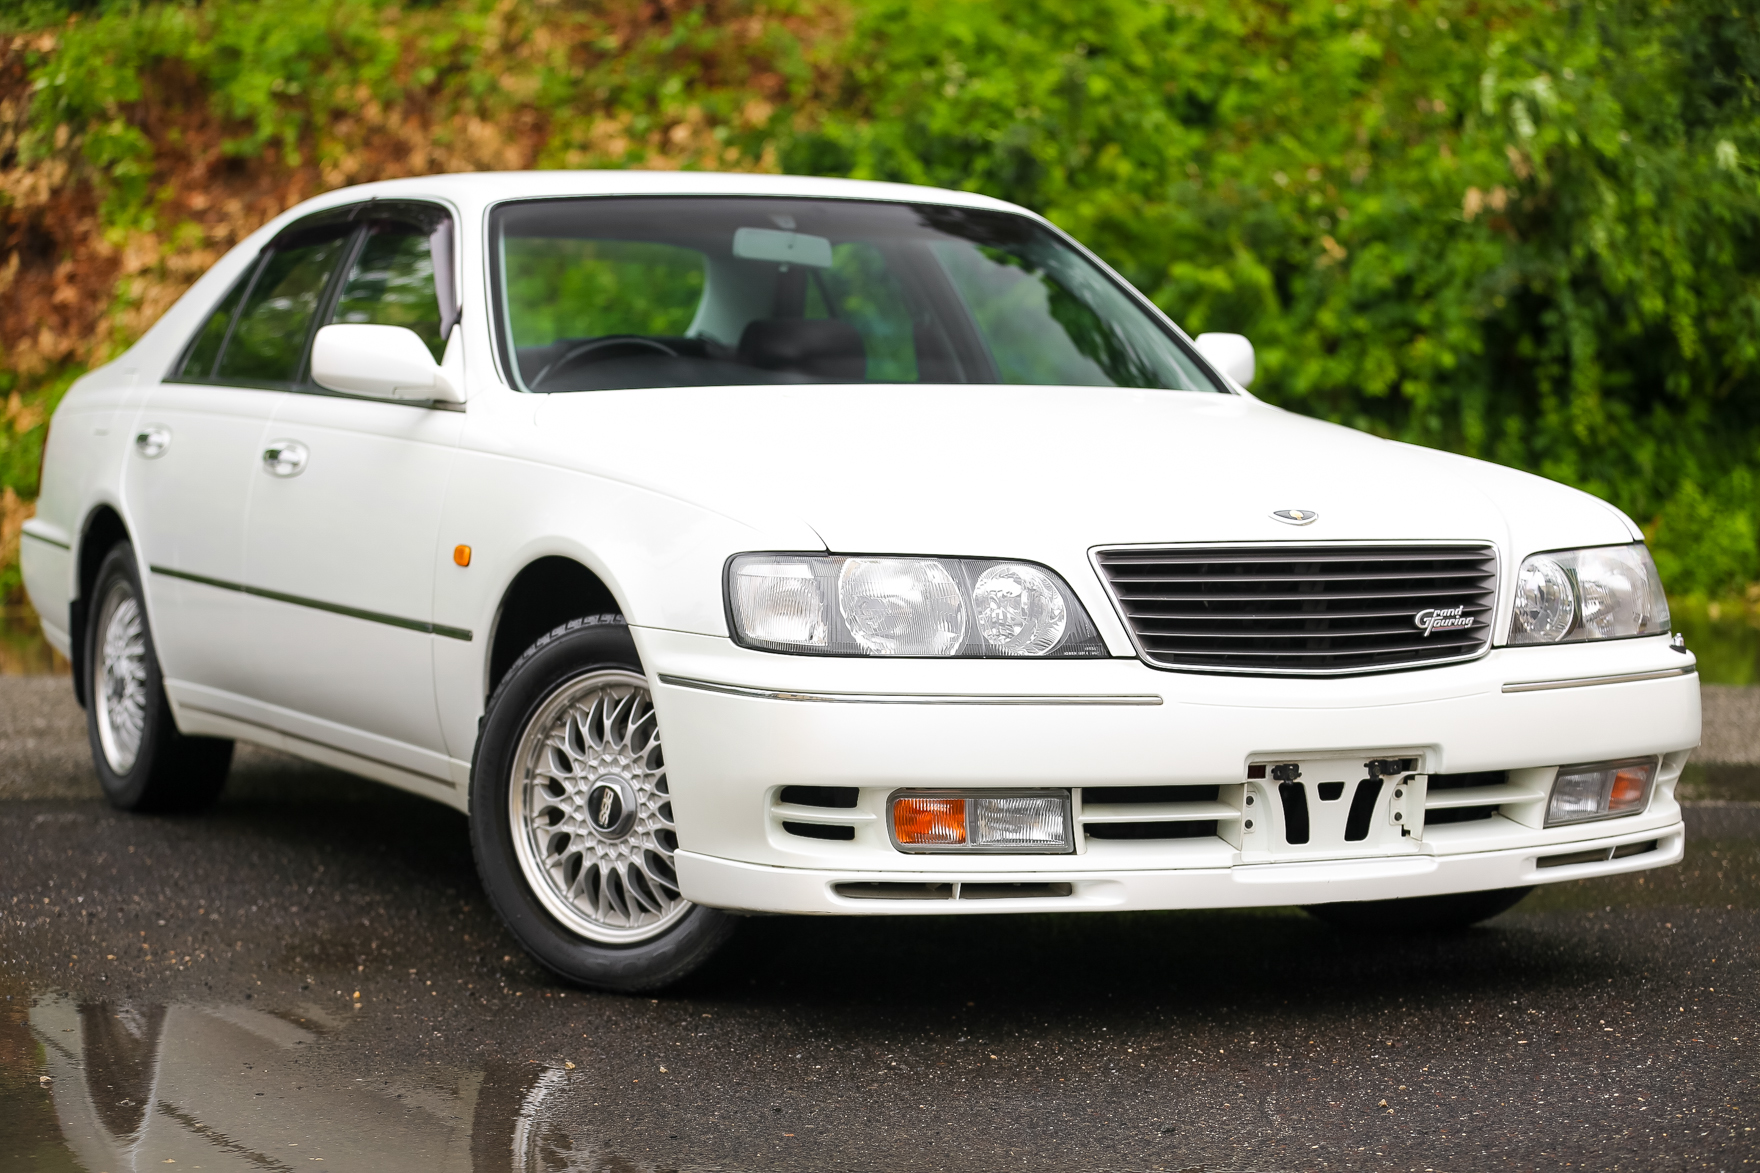 1996 Nissan Cima Turbo - $13,750